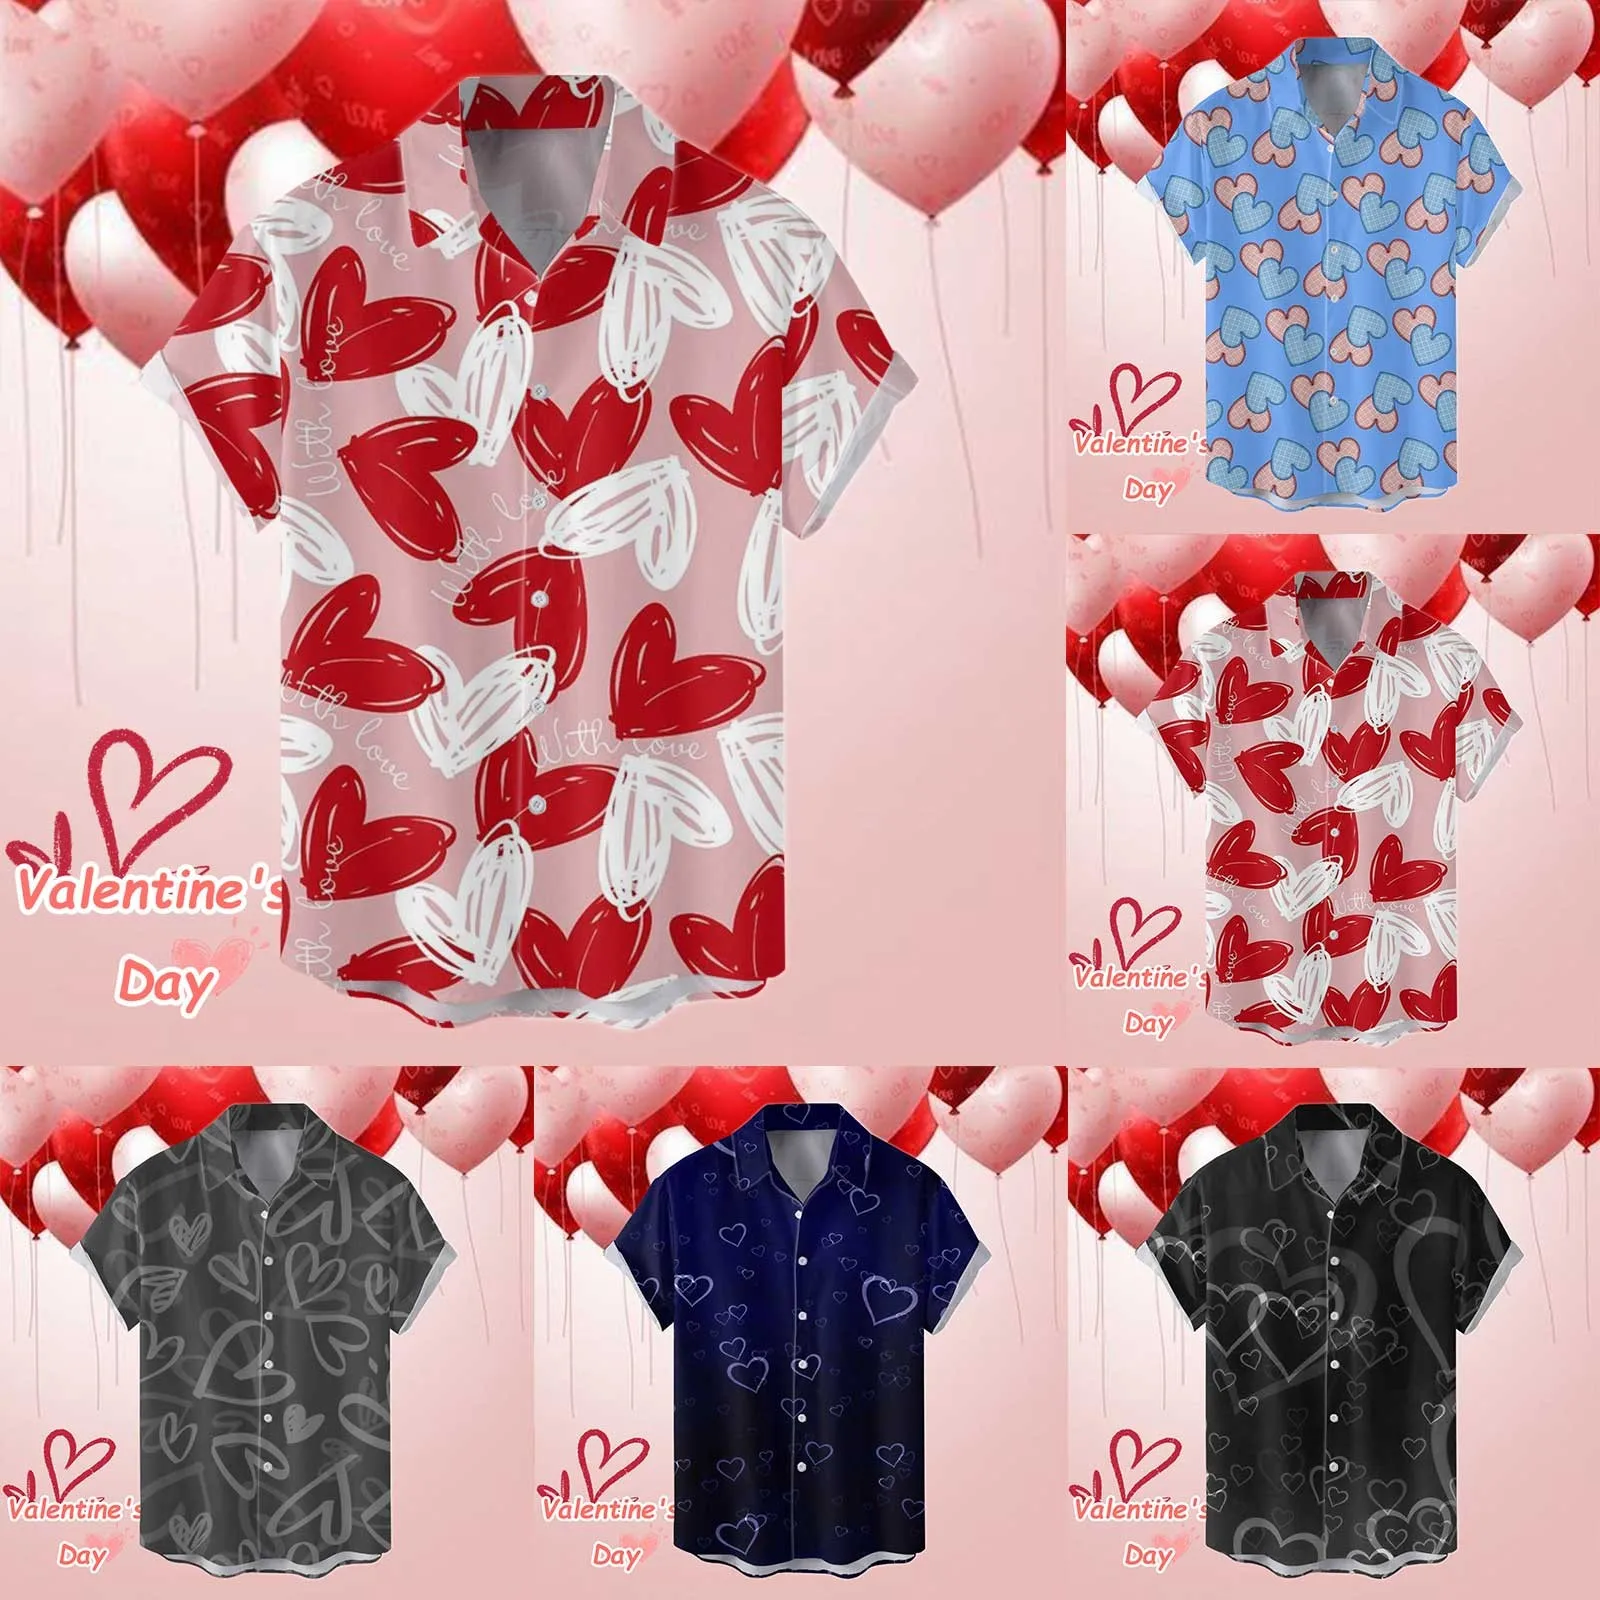 Мужская рубашка, подходящие к паре блузки, рубашки на День Святого Валентина, Повседневные рубашки для бойфренда и любовника Топы празднично-графические майки для отпуска